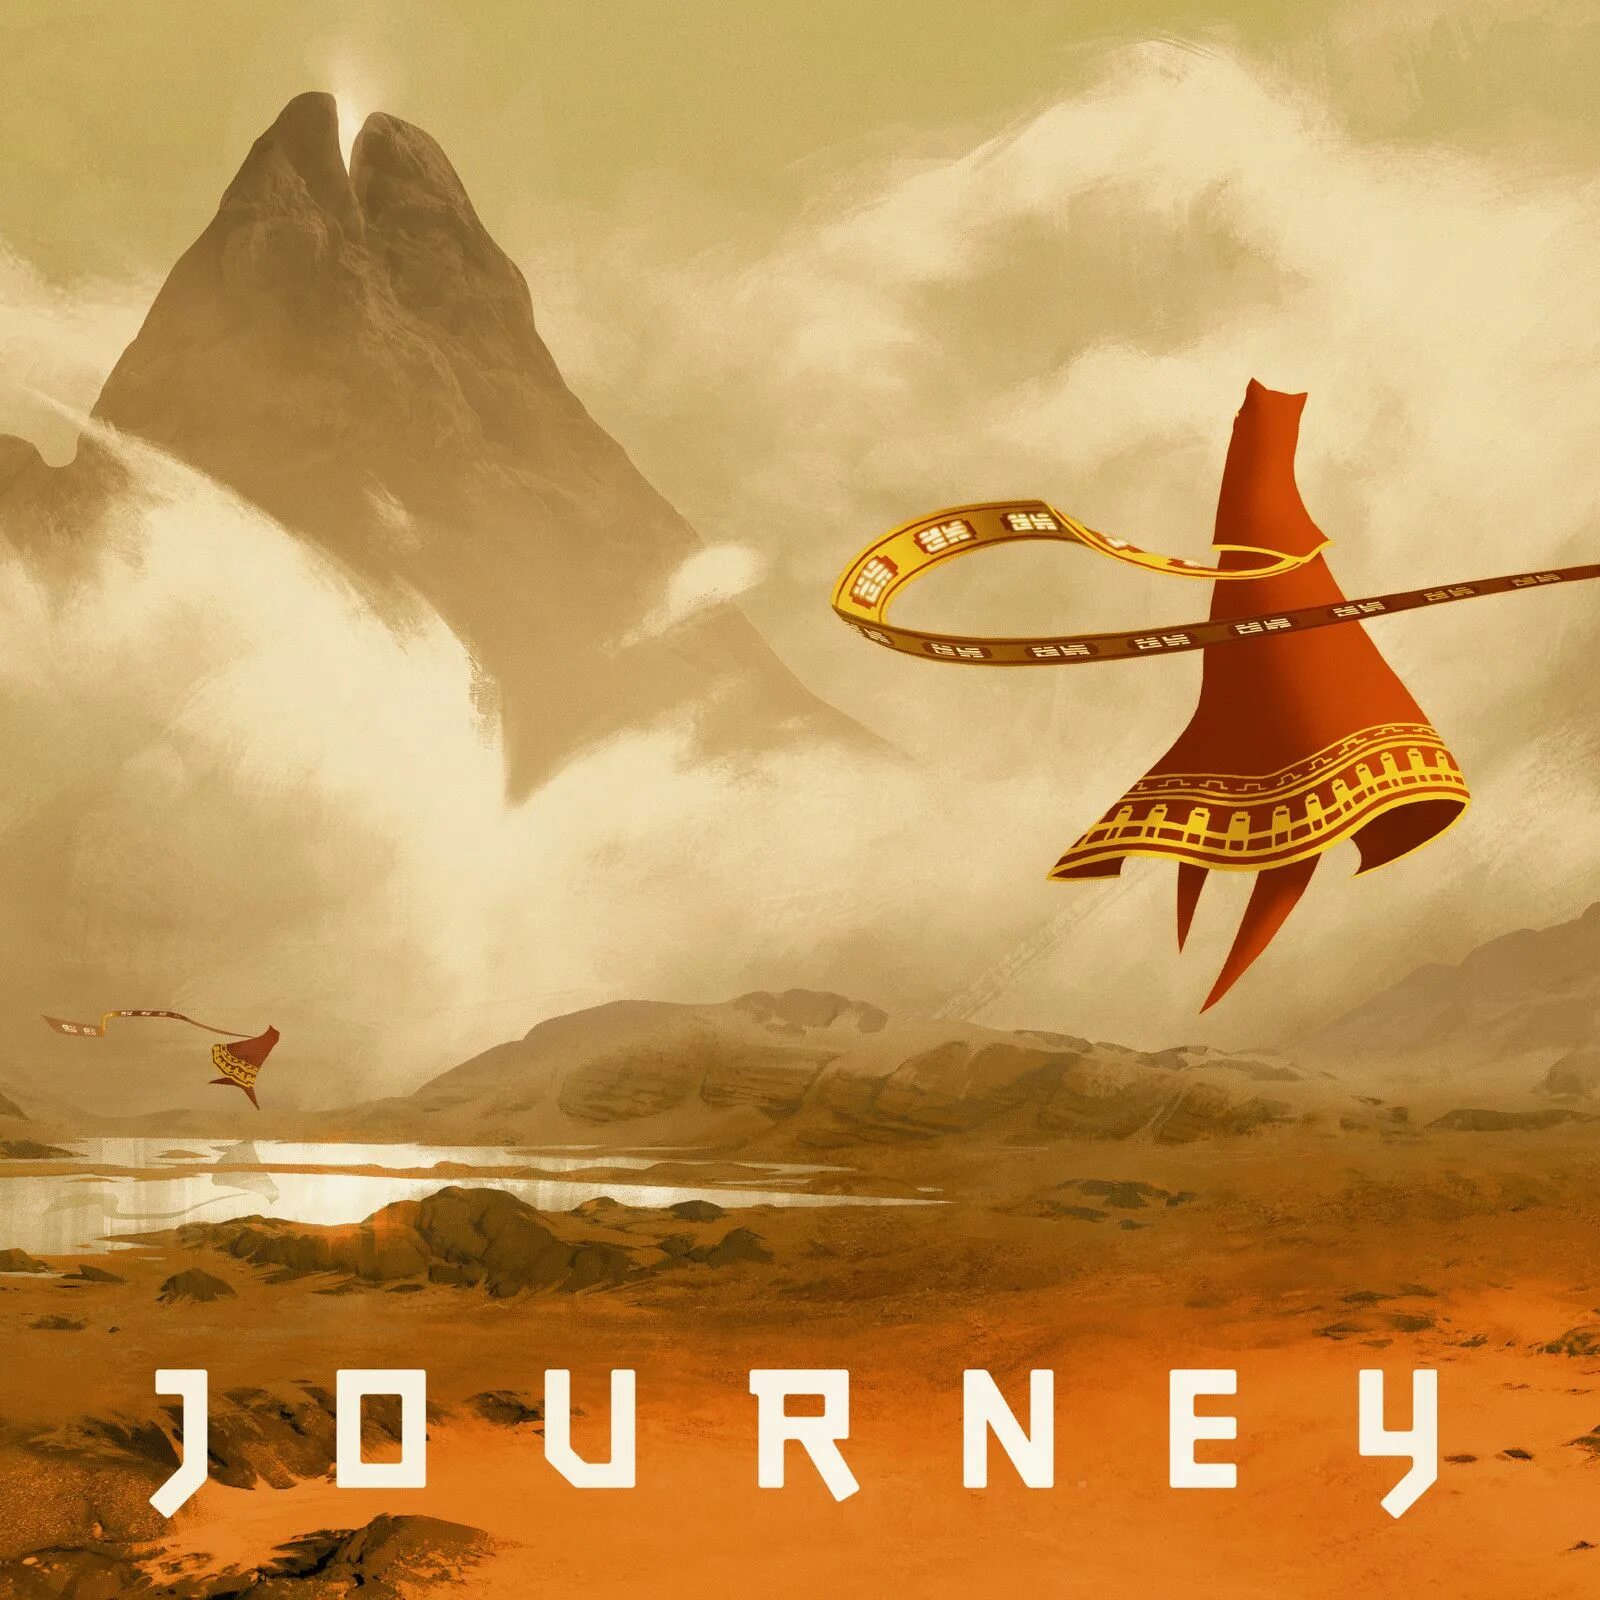 Journey включи. Journey (игра, 2012). Journey thatgamecompany. Путешествие игра Journey. Джорни путешествие игра.